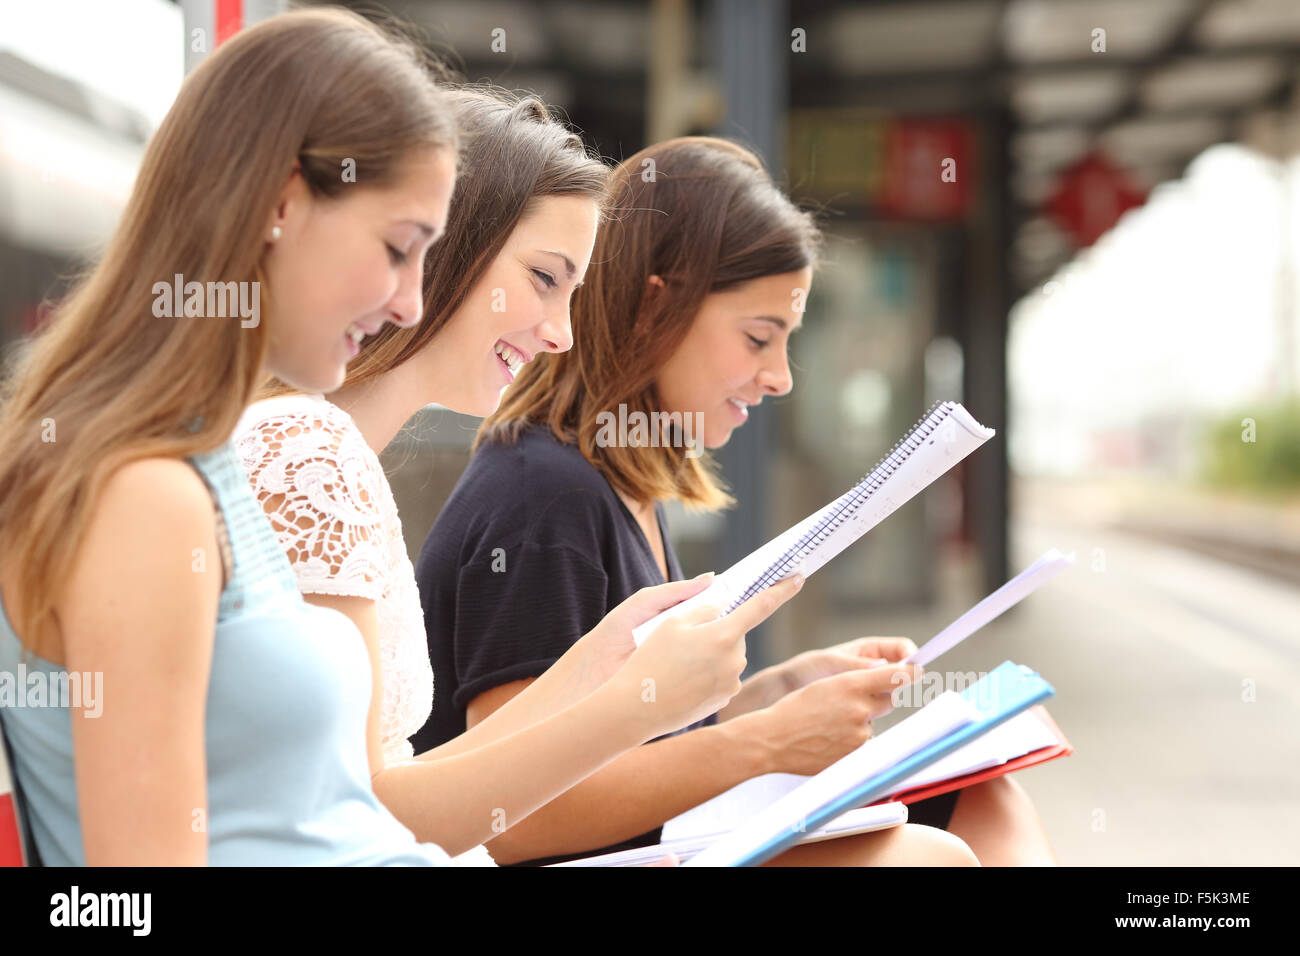 Profil des étudiants et de l'apprentissage trois notes de lecture dans une gare Banque D'Images